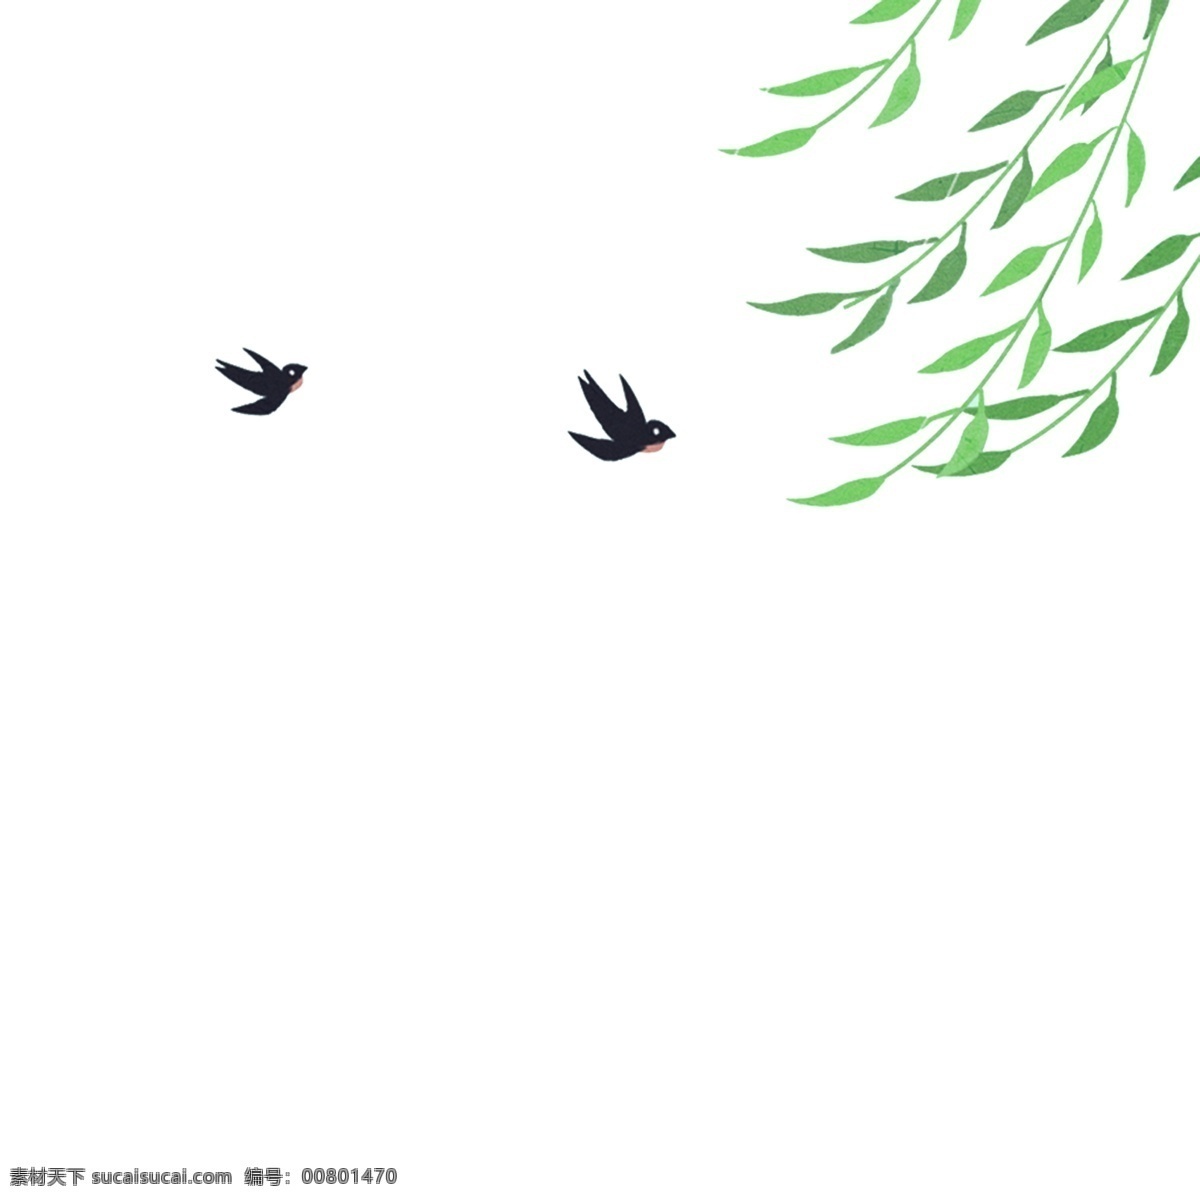 卡通 绿色植物 燕子 免 抠 图 植物 叶子 绿色生态 漂亮的植物 小燕子 小动物 免抠图